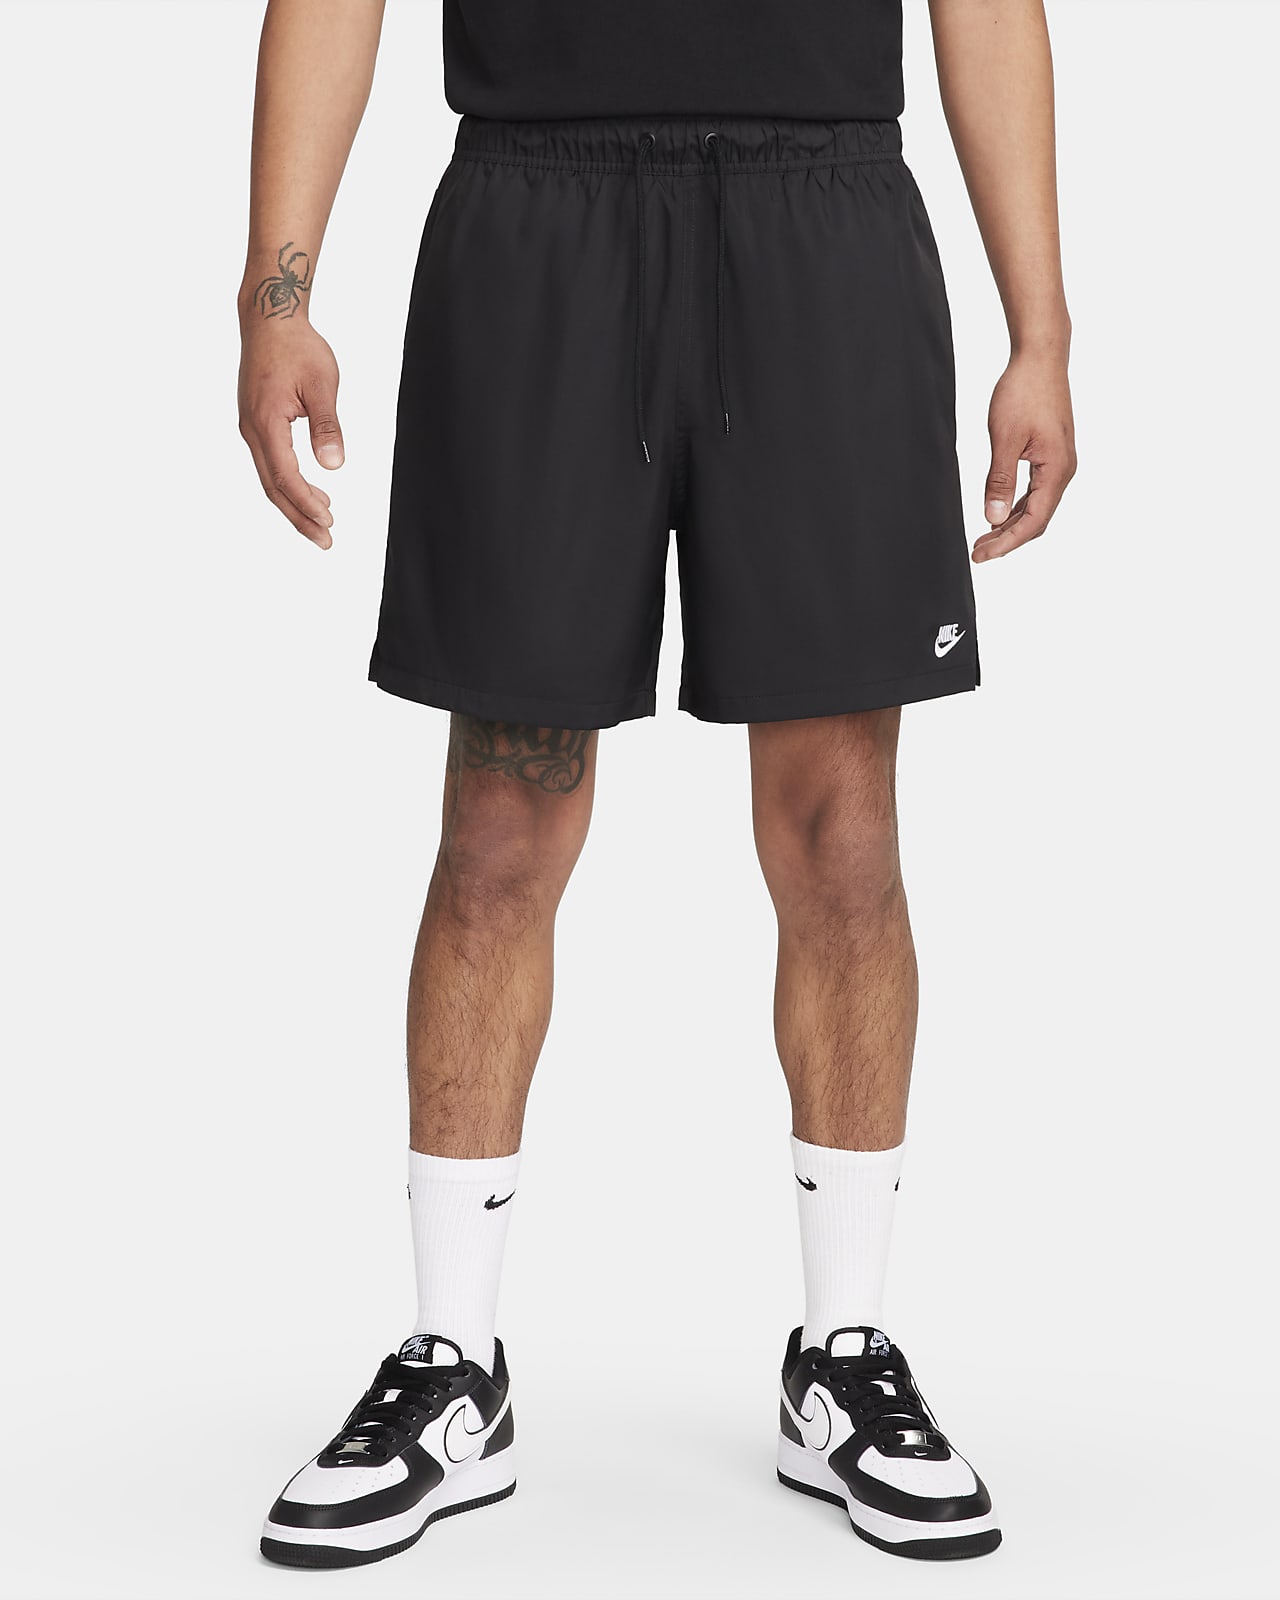 Ανδρικό υφαντό σορτς για ελευθερία κινήσεων Nike Club